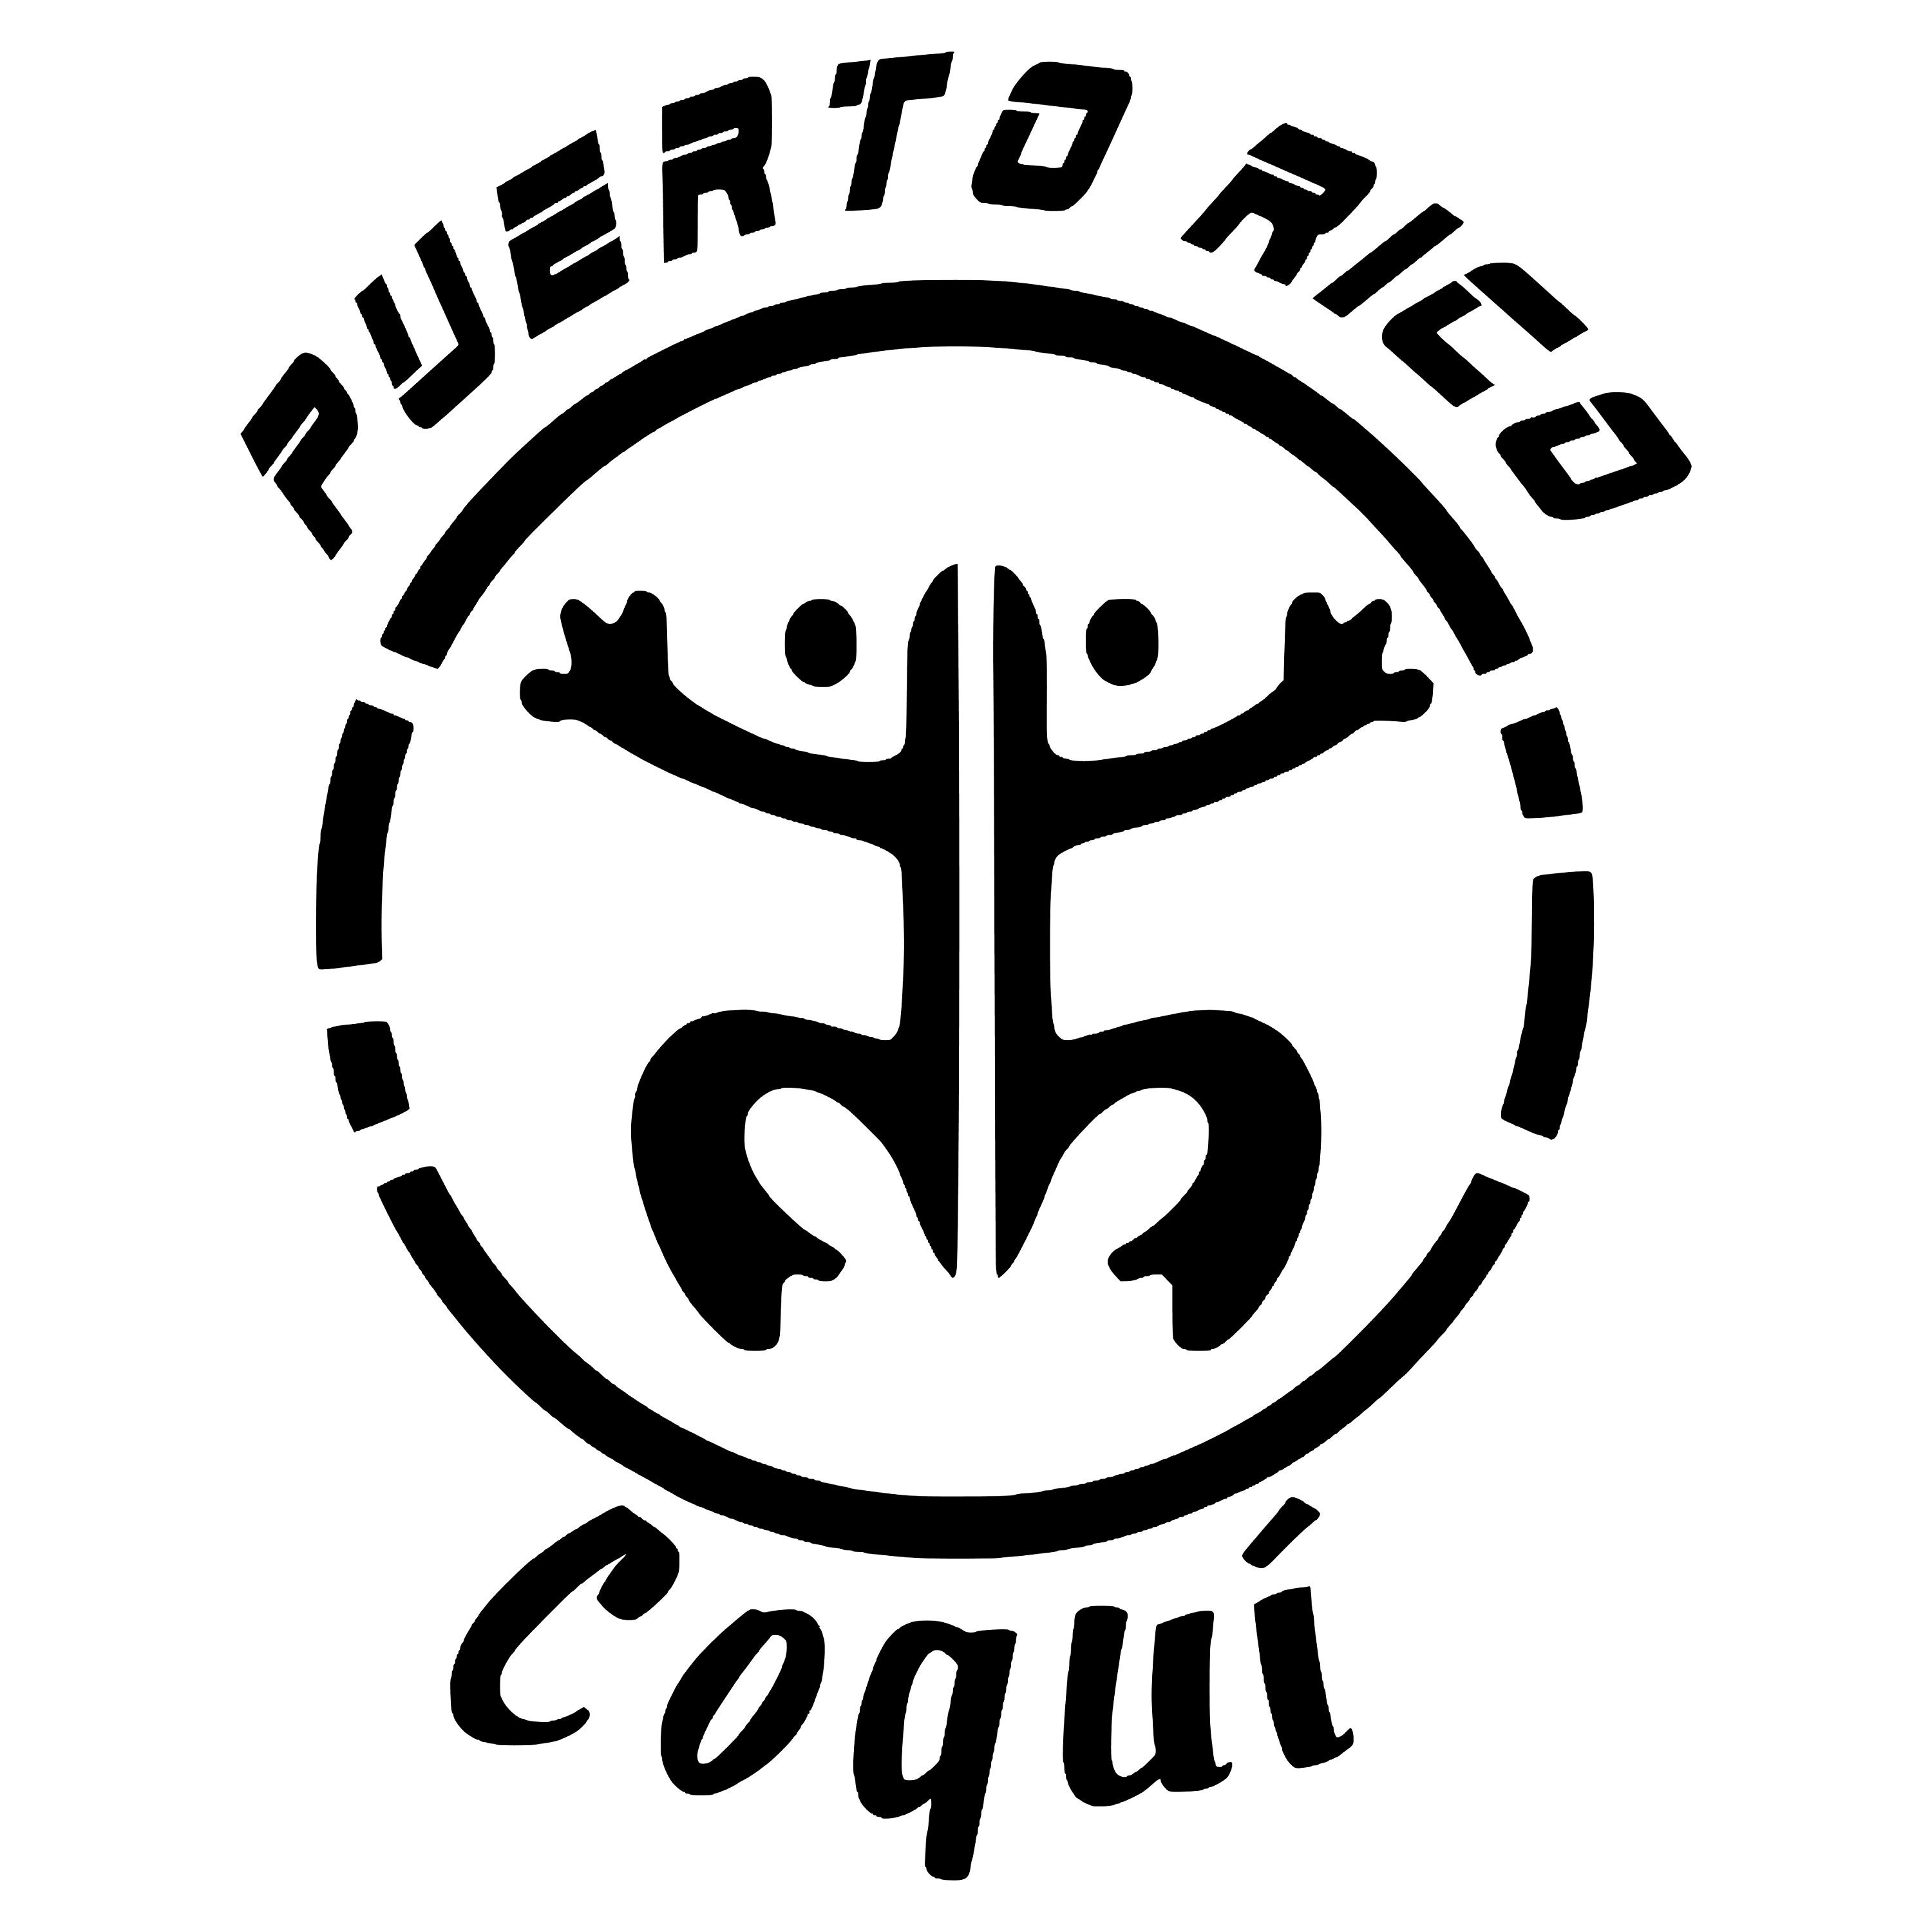 Coqui. Coqui картинки. Coqui Puerto Rico Taino. Coqui обувь логотип.